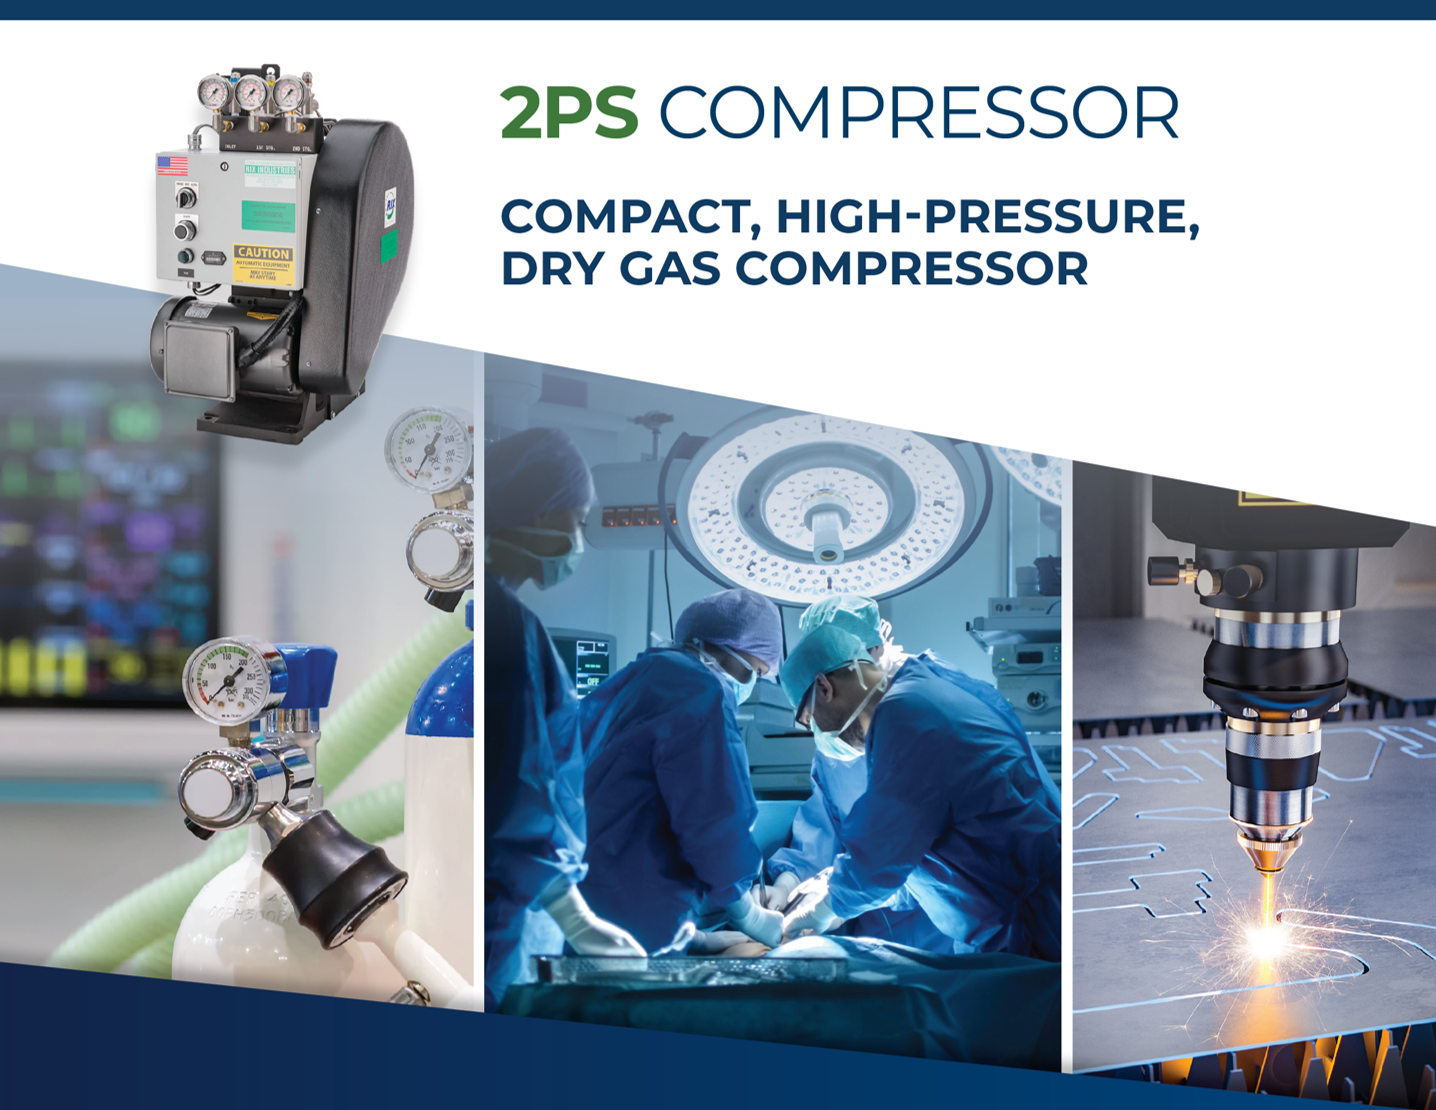 Low Flow 2PS Compressor